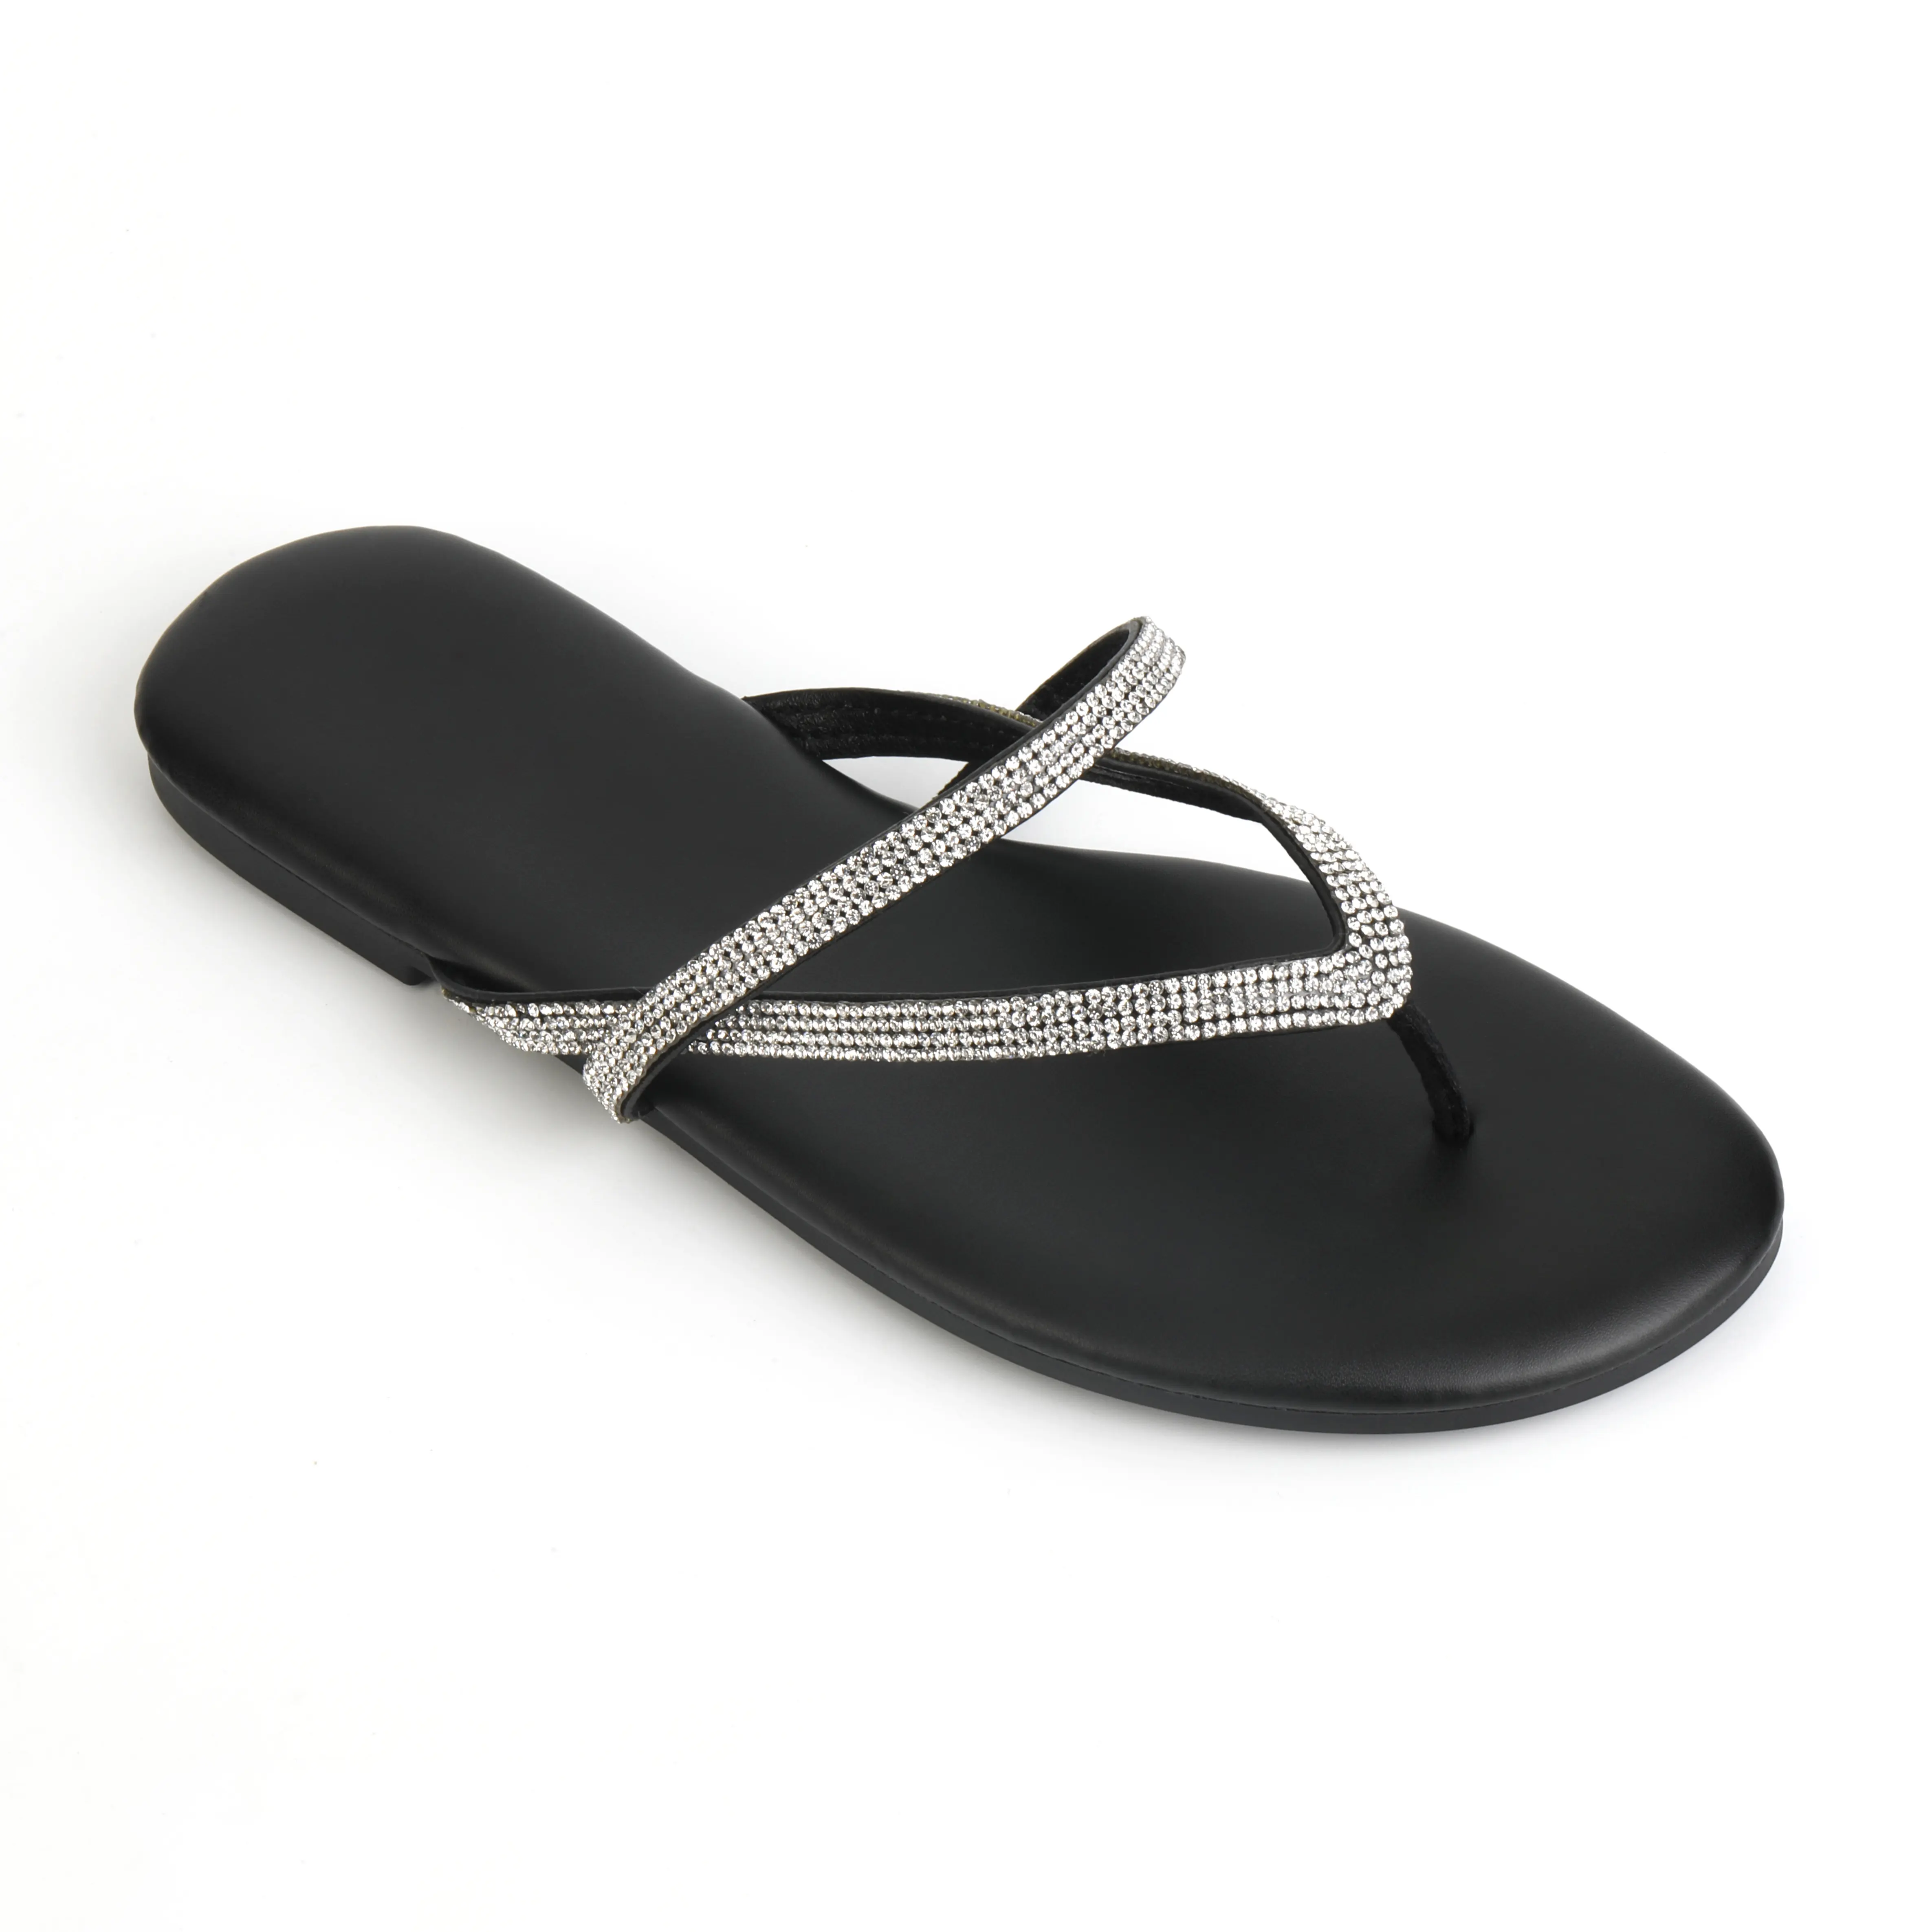 Produsen gaya baru sandal pantai sandal kulit wanita kristal berlian imitasi sandal jepit grosir dengan ukuran 13 sepatu wanita